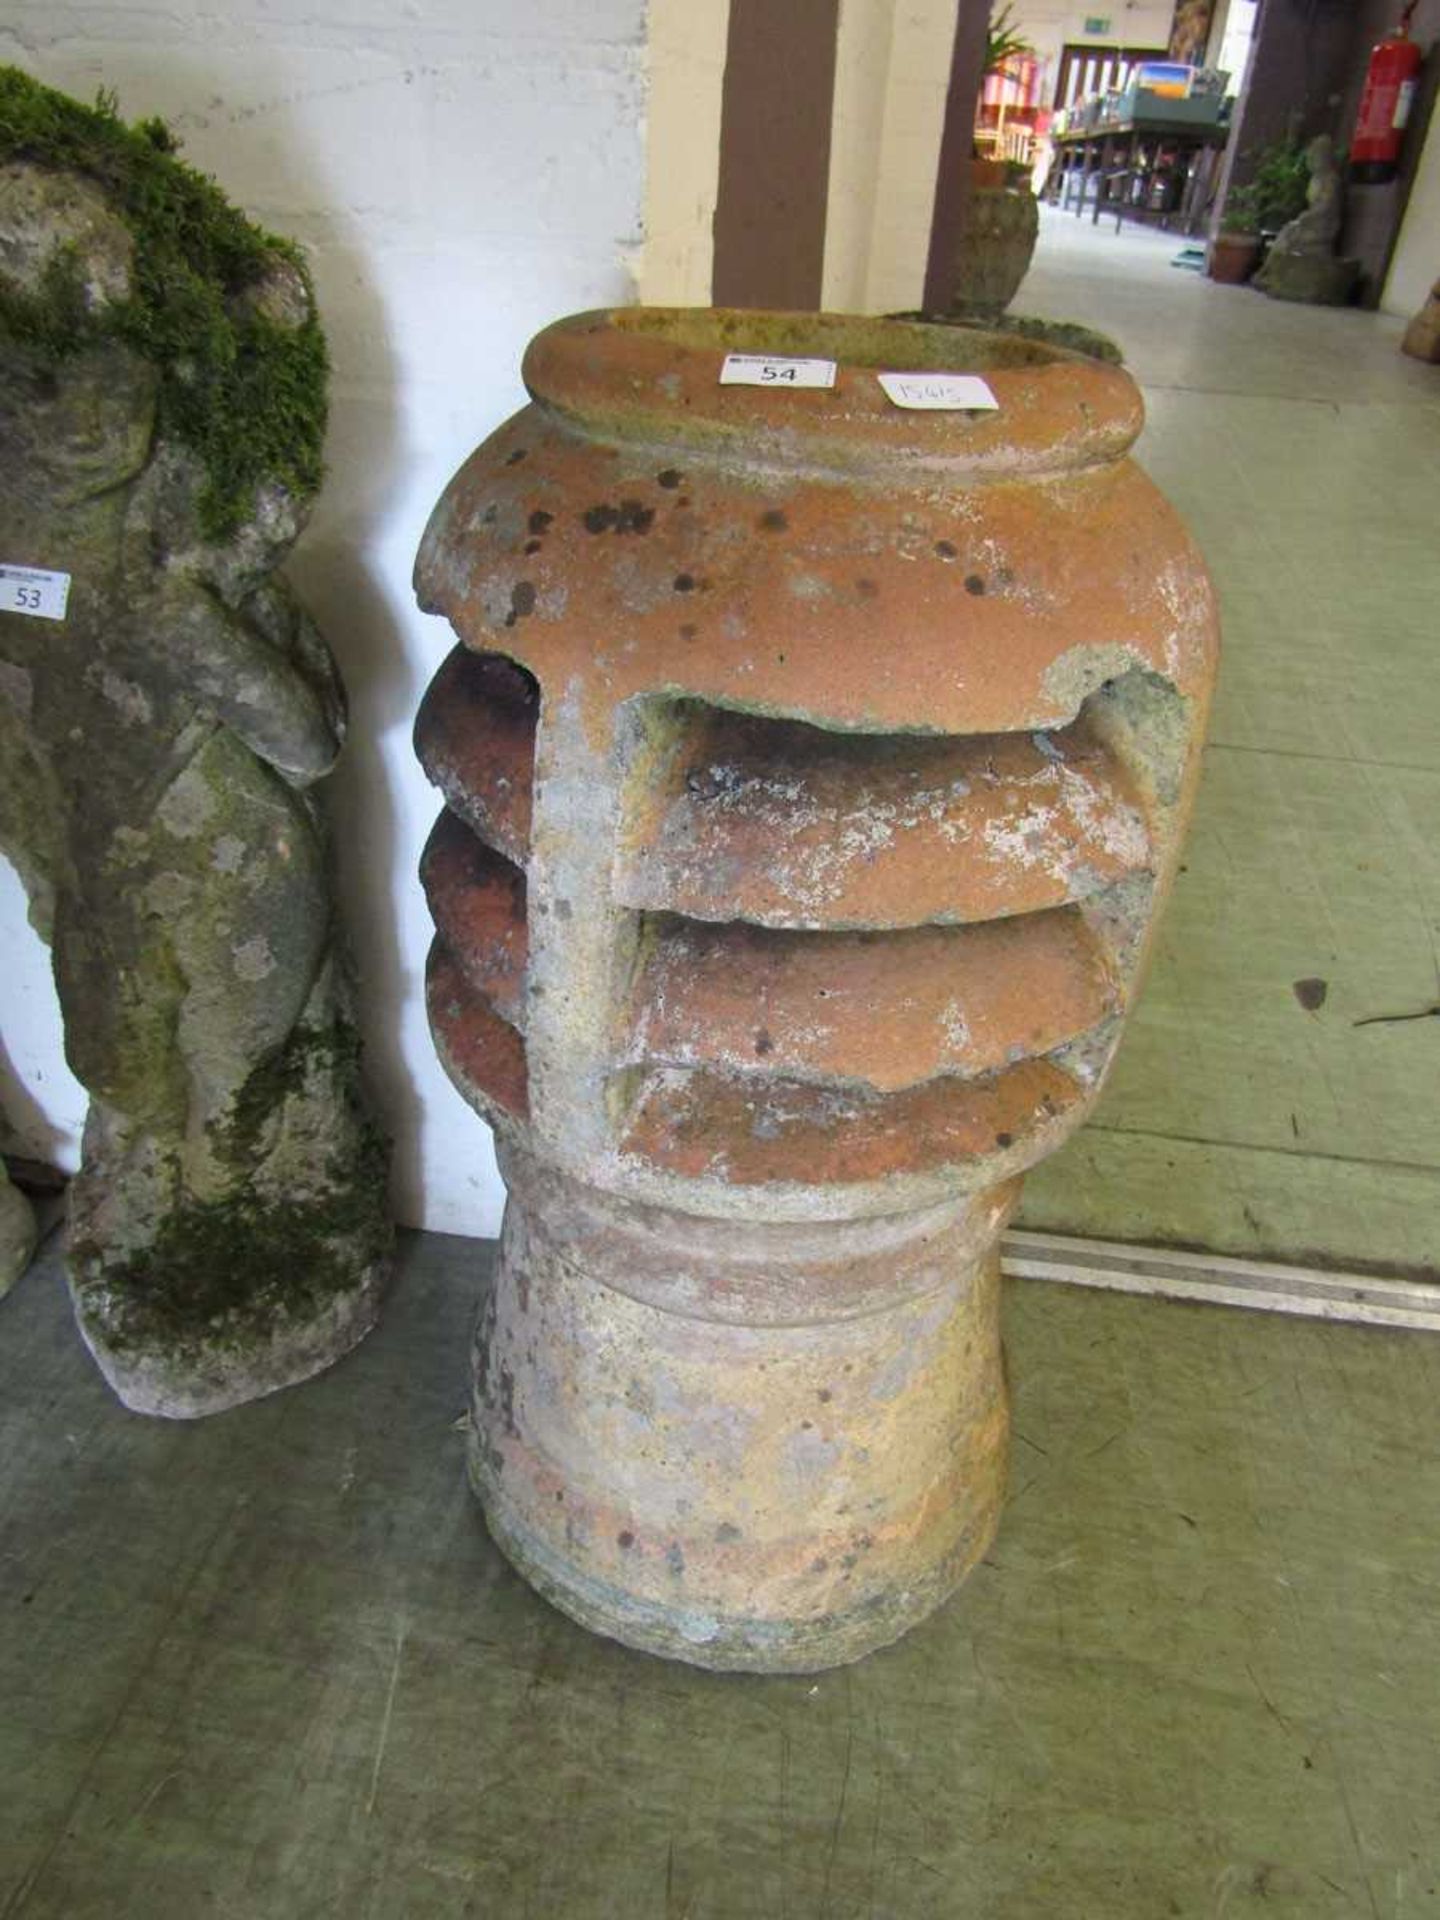 A clay chimney pot